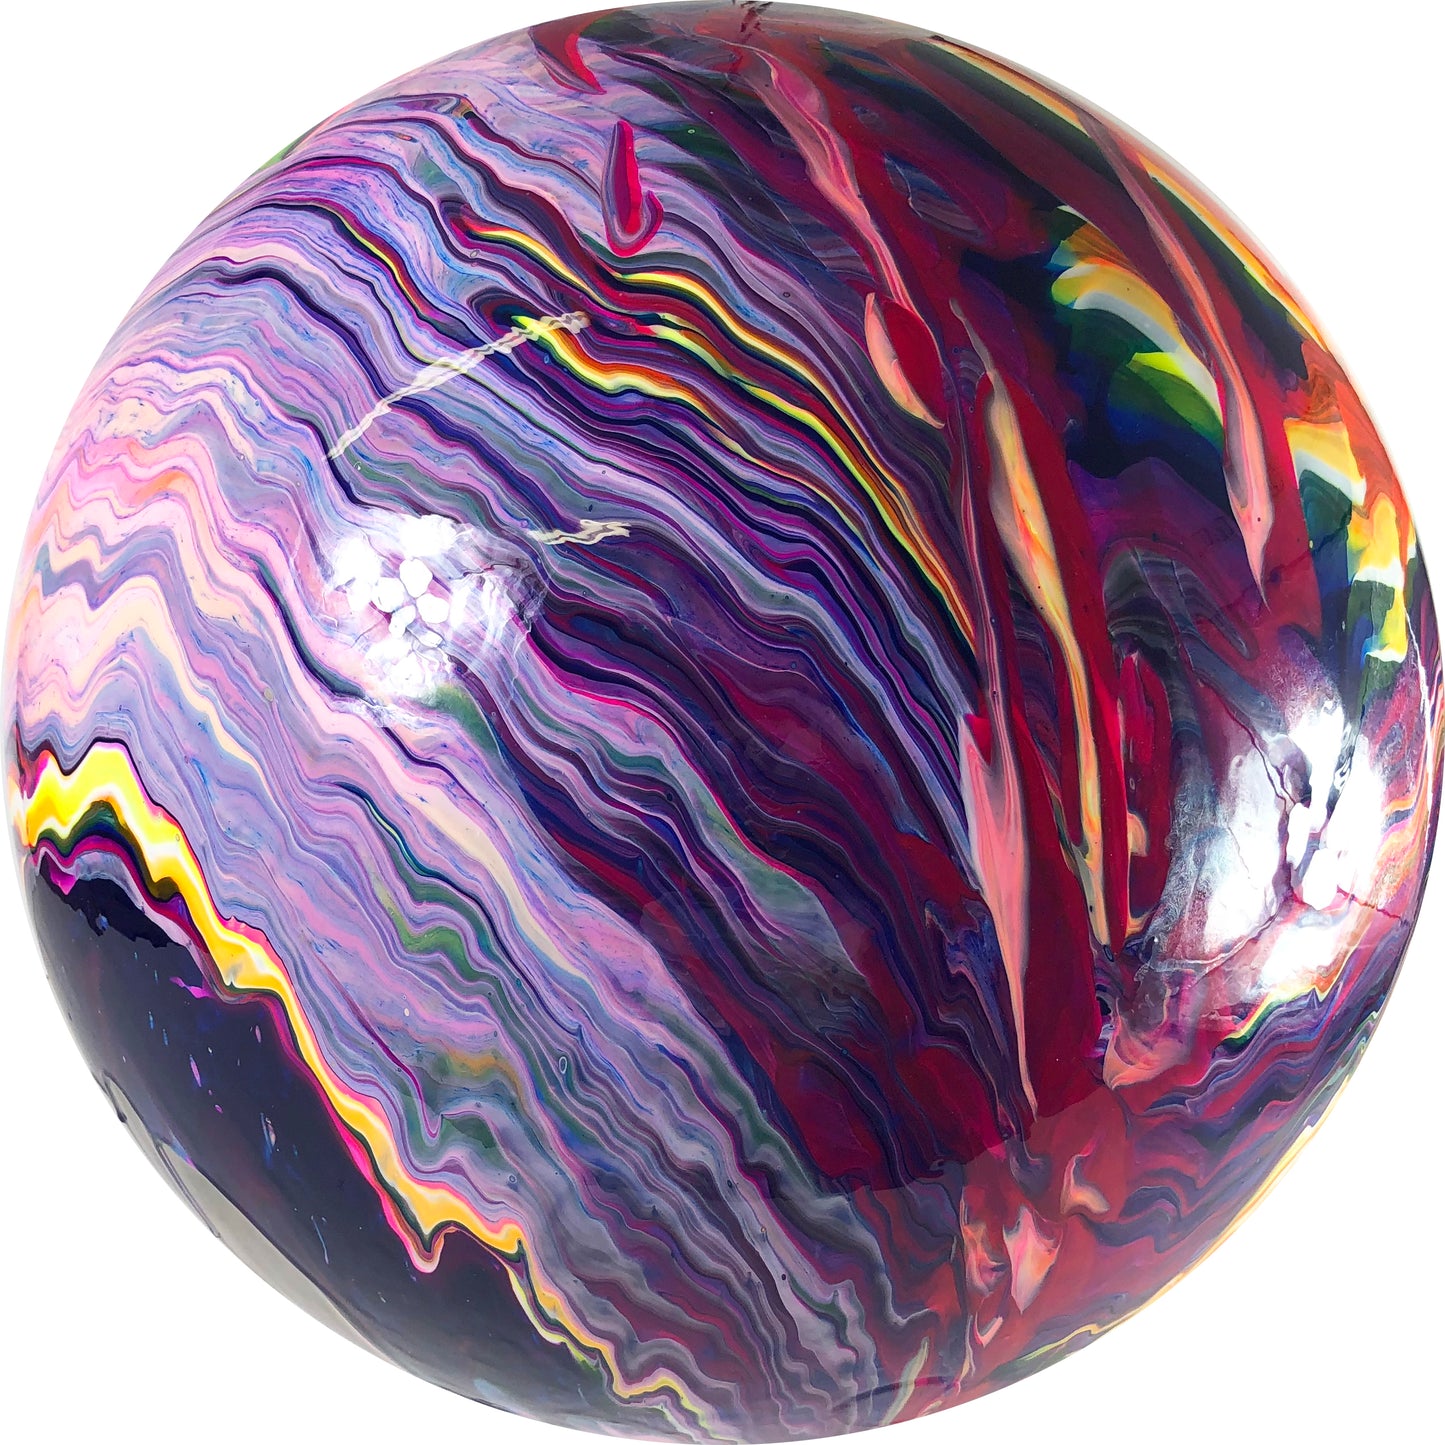 Sphere I